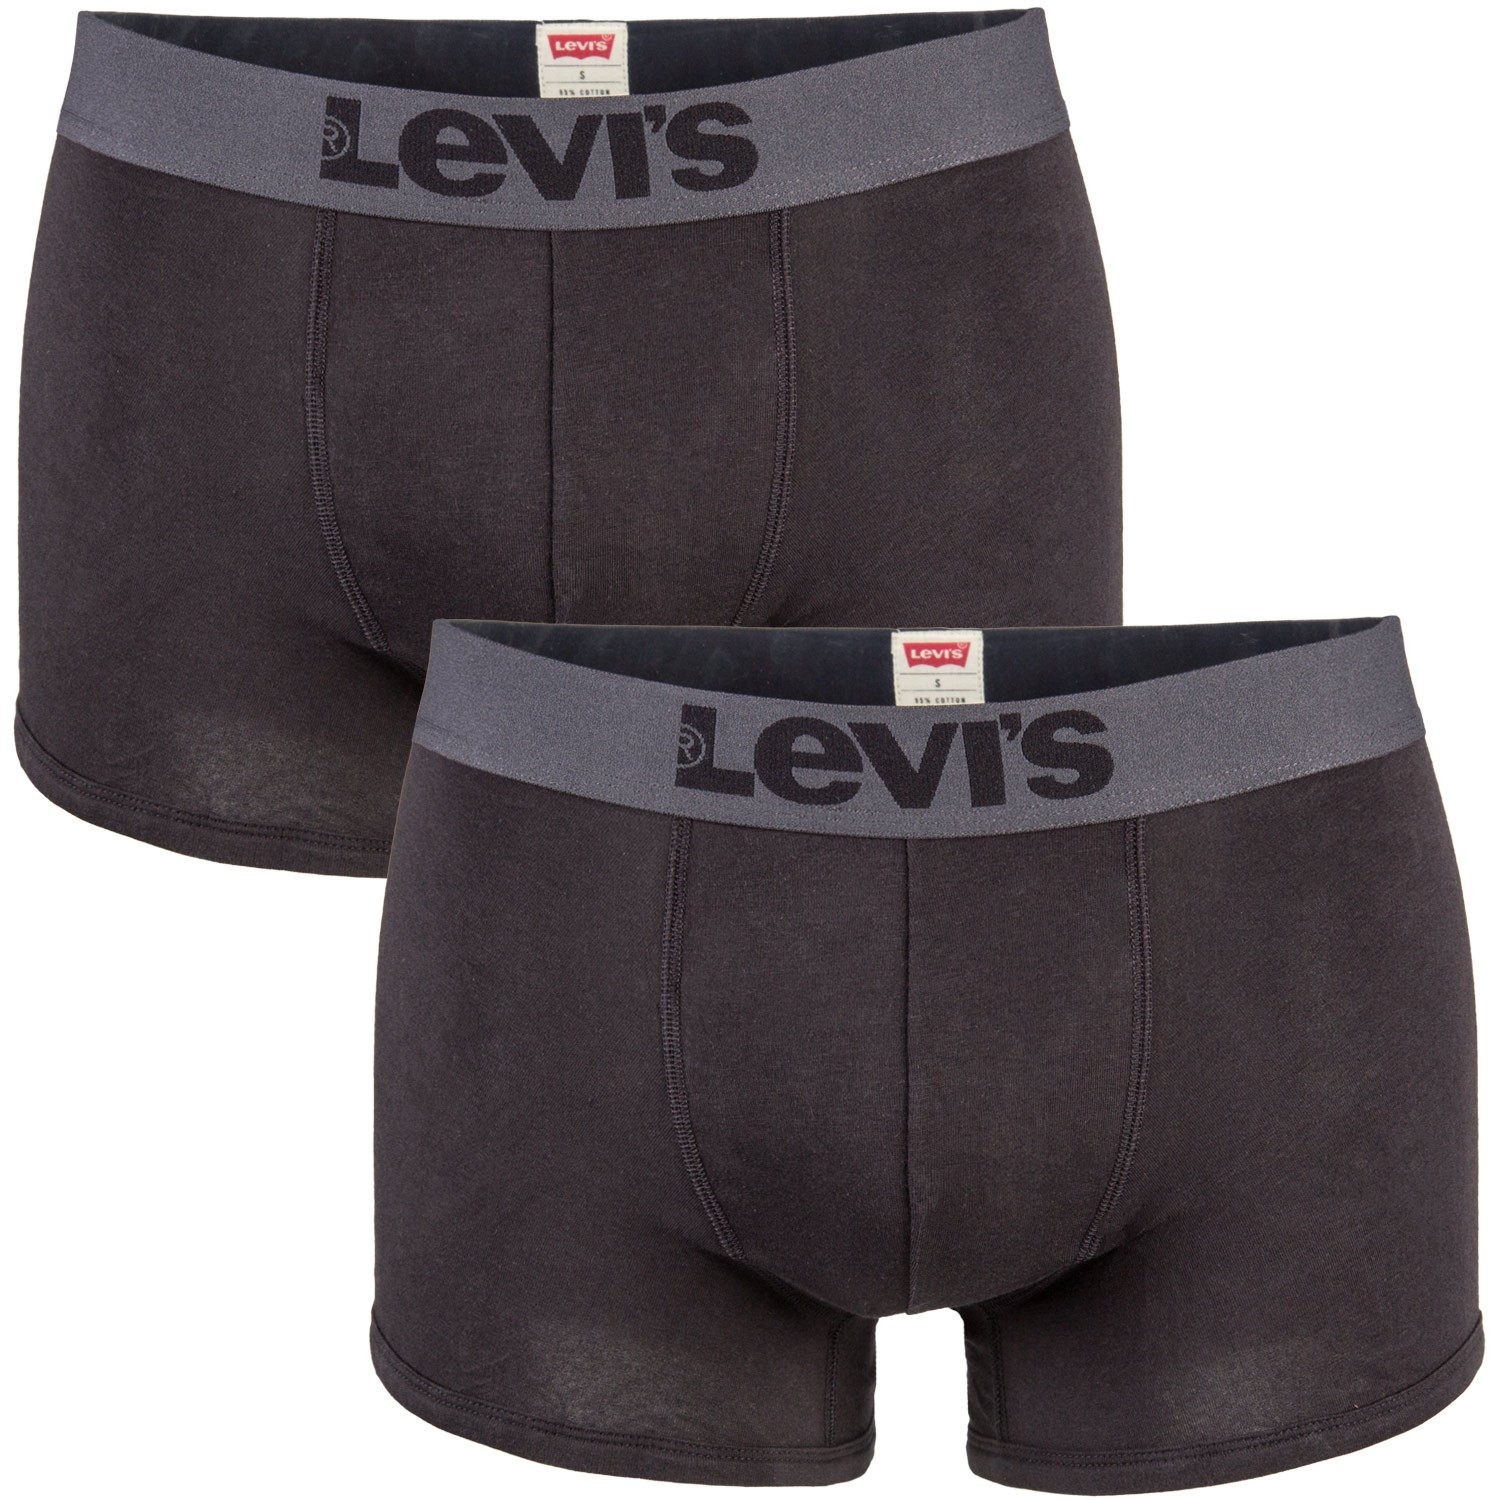 levis trunks underwear